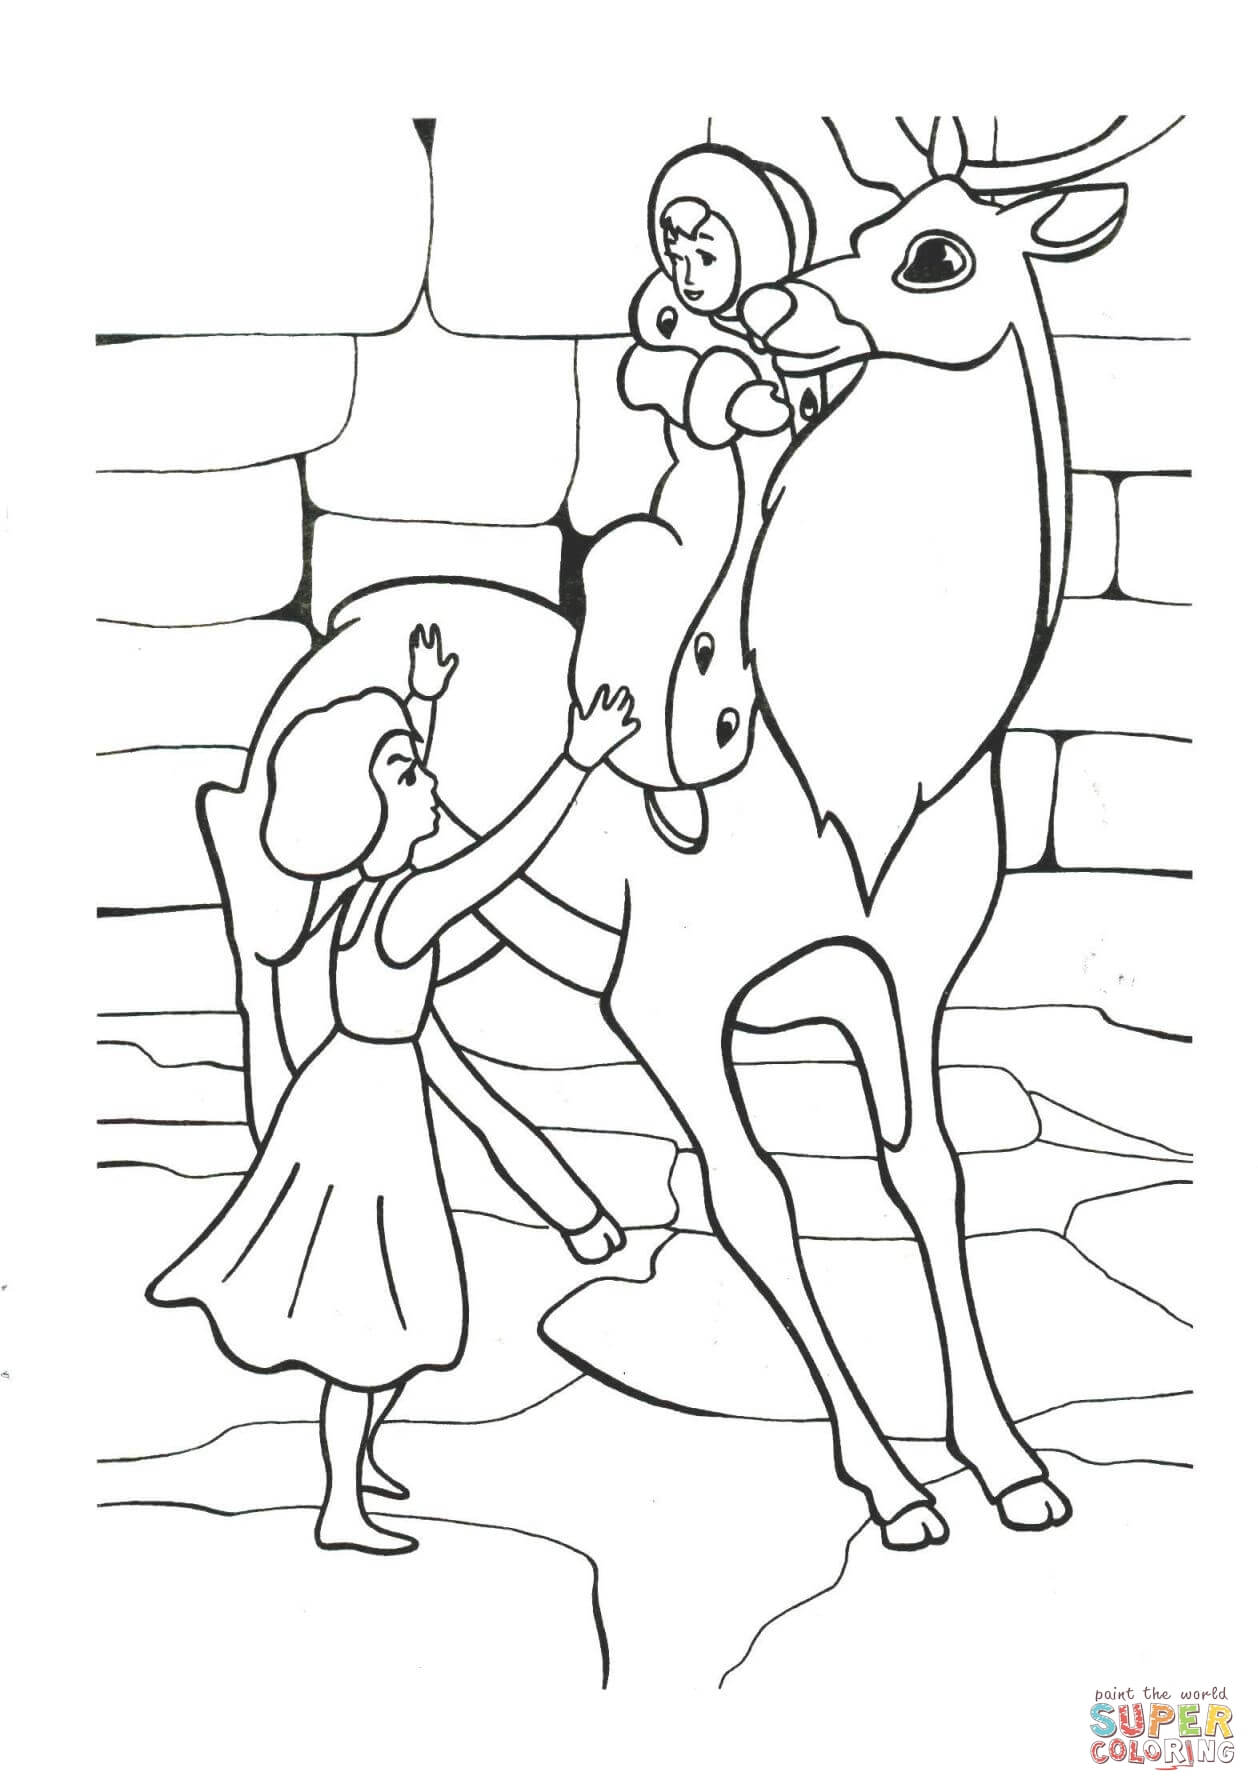 Раскраски для детей с изображением любимых героев сказок Снежная королева ,Кай и Герда . Раскраски для детей любых возрастов с героями сказки Снежная Королева  